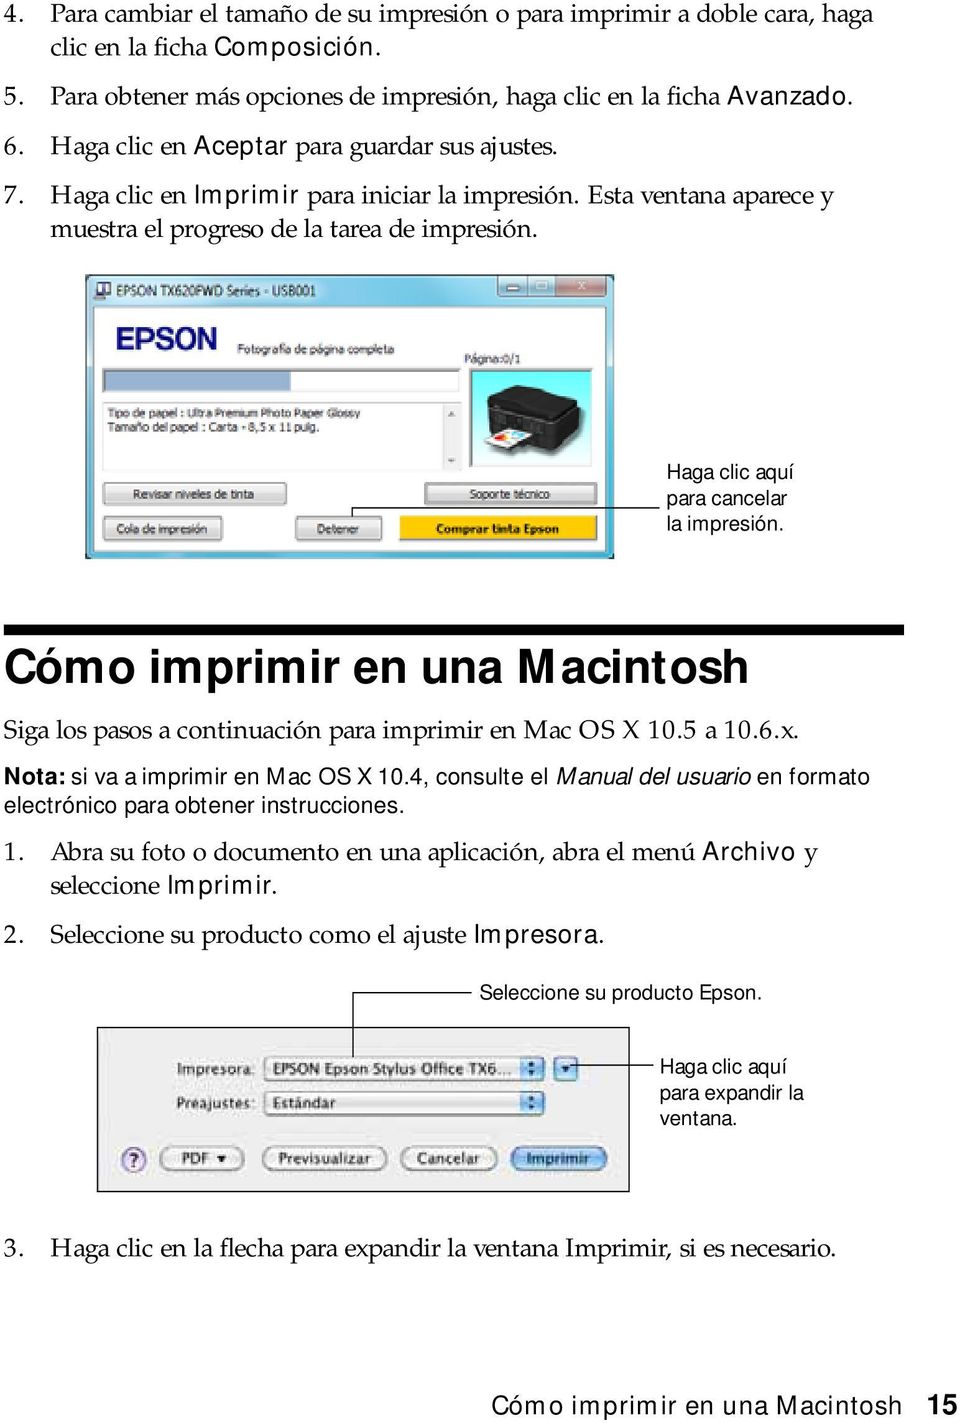 Haga clic aquí para cancelar la impresión. Cómo imprimir en una Macintosh Siga los pasos a continuación para imprimir en Mac OS X 10.5 a 10.6.x. Nota: si va a imprimir en Mac OS X 10.